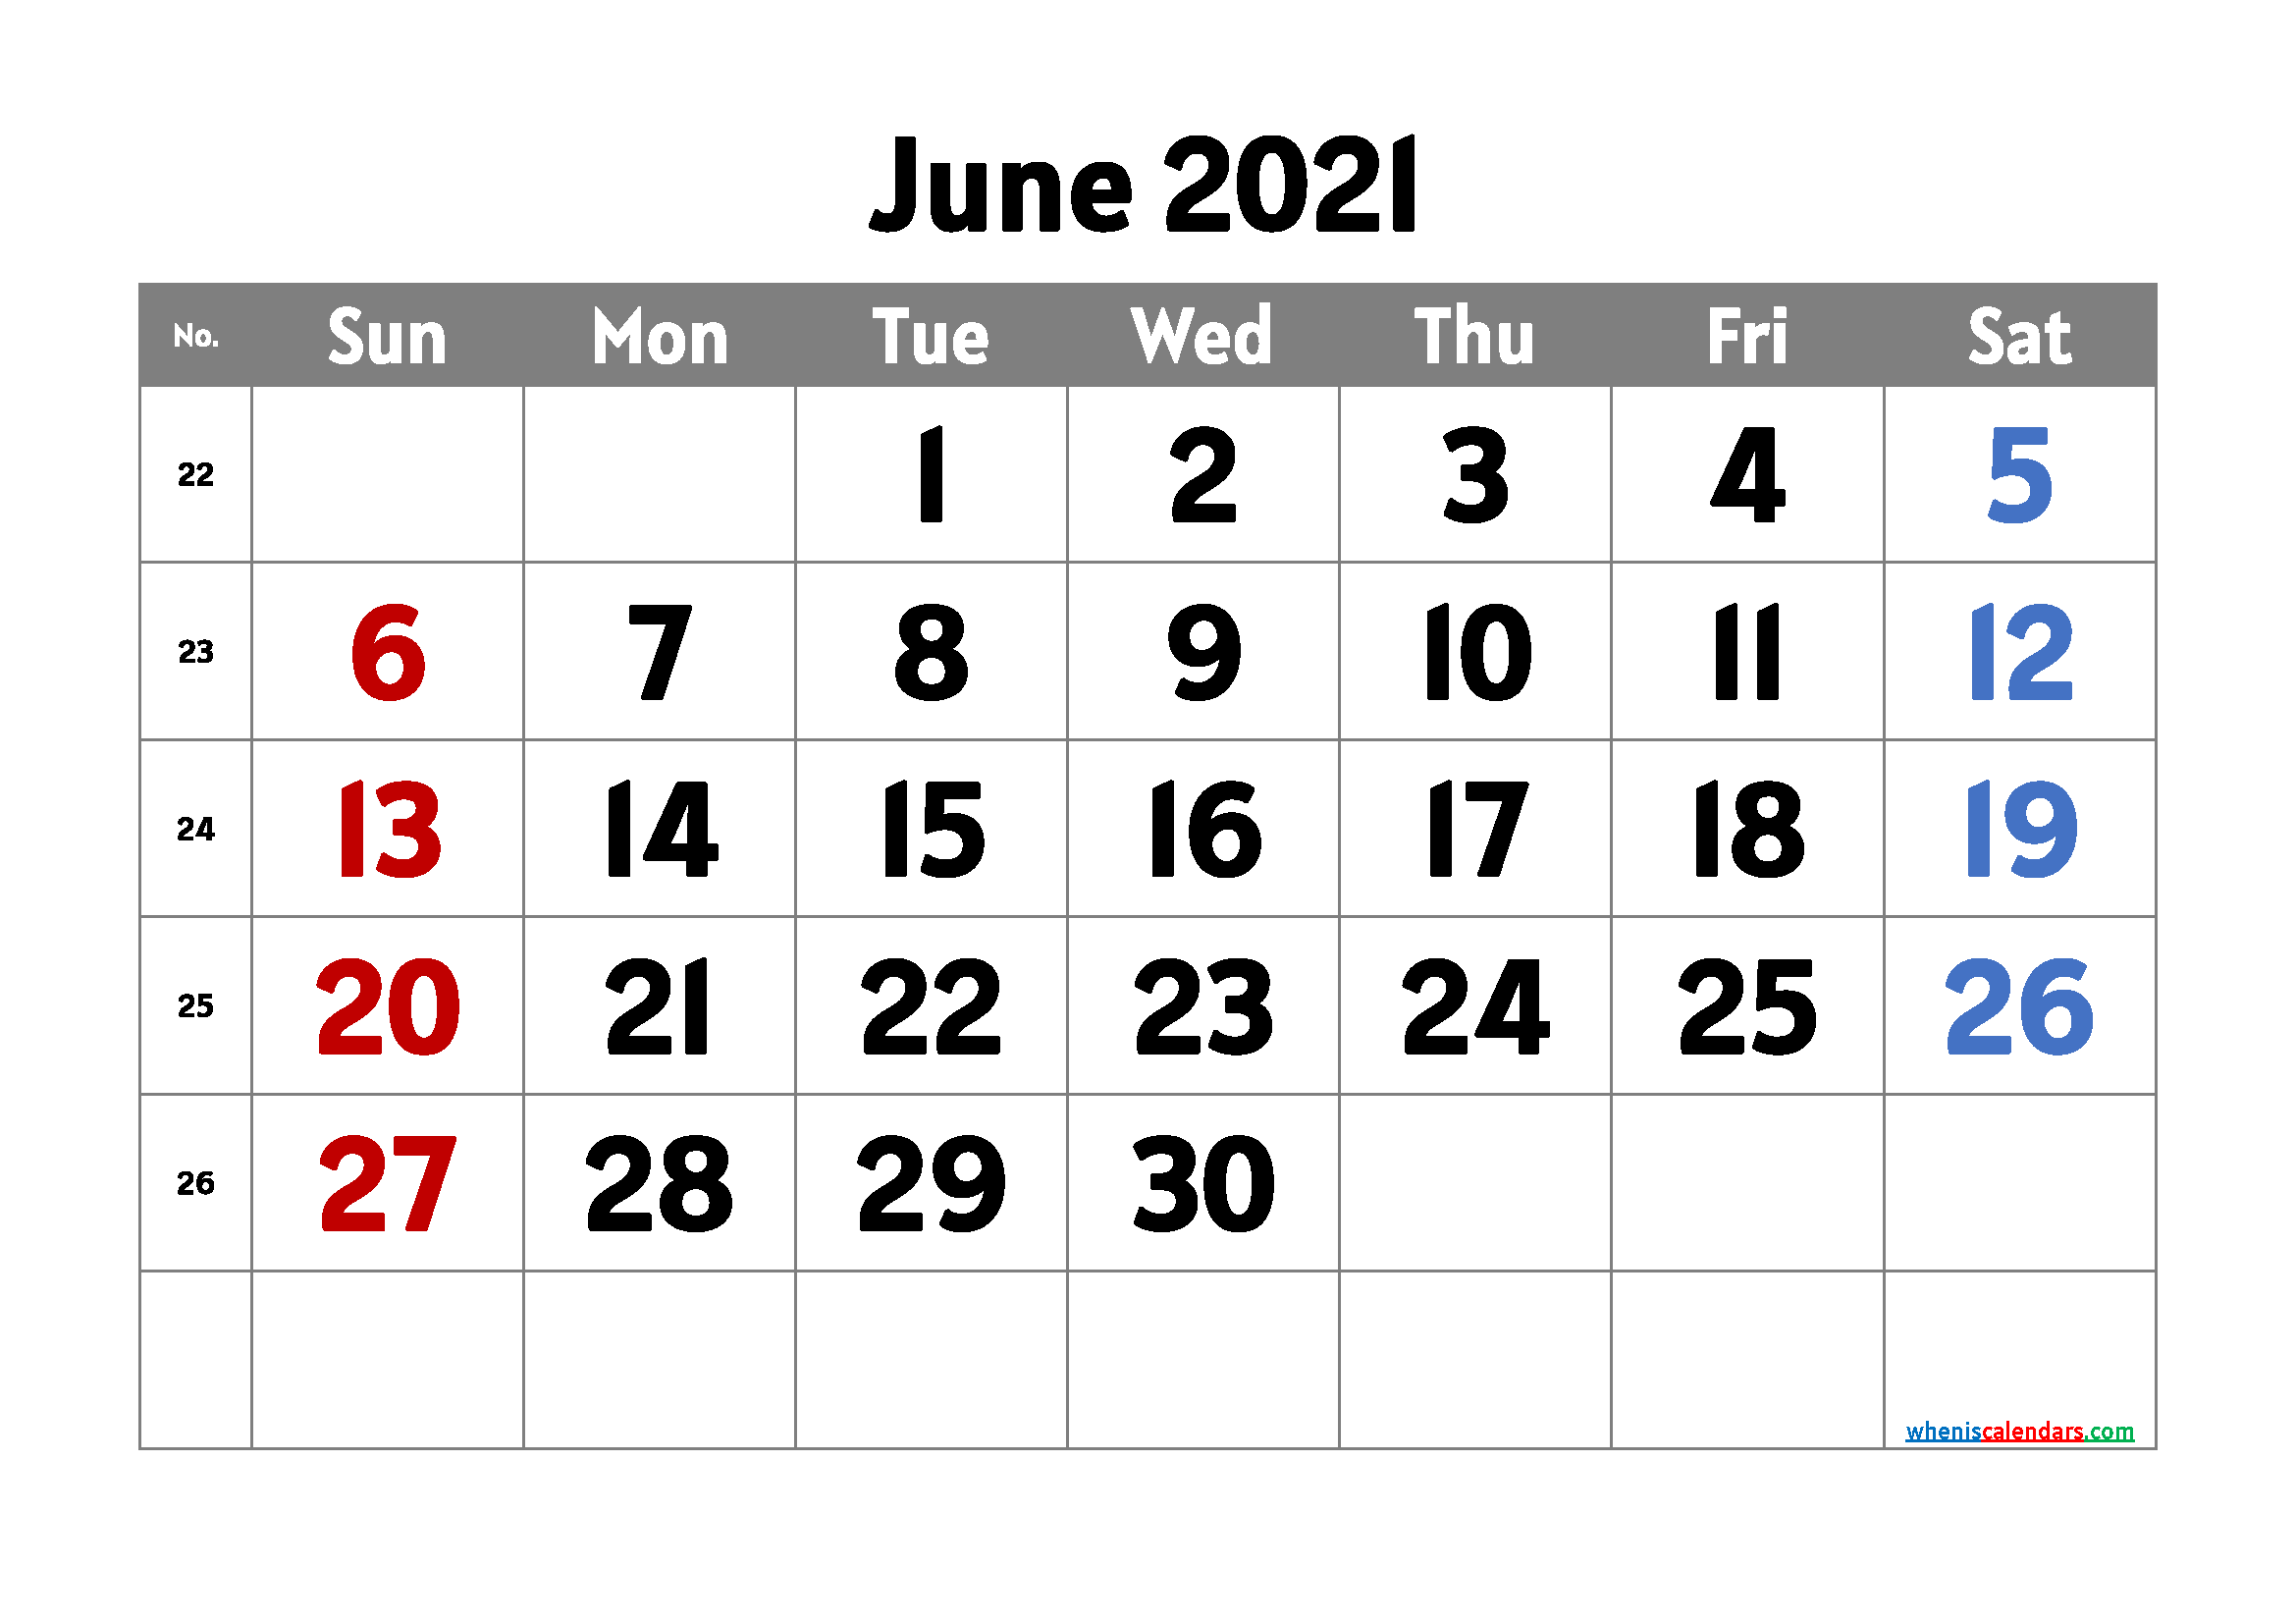 June 2021 Calendar Printable Free